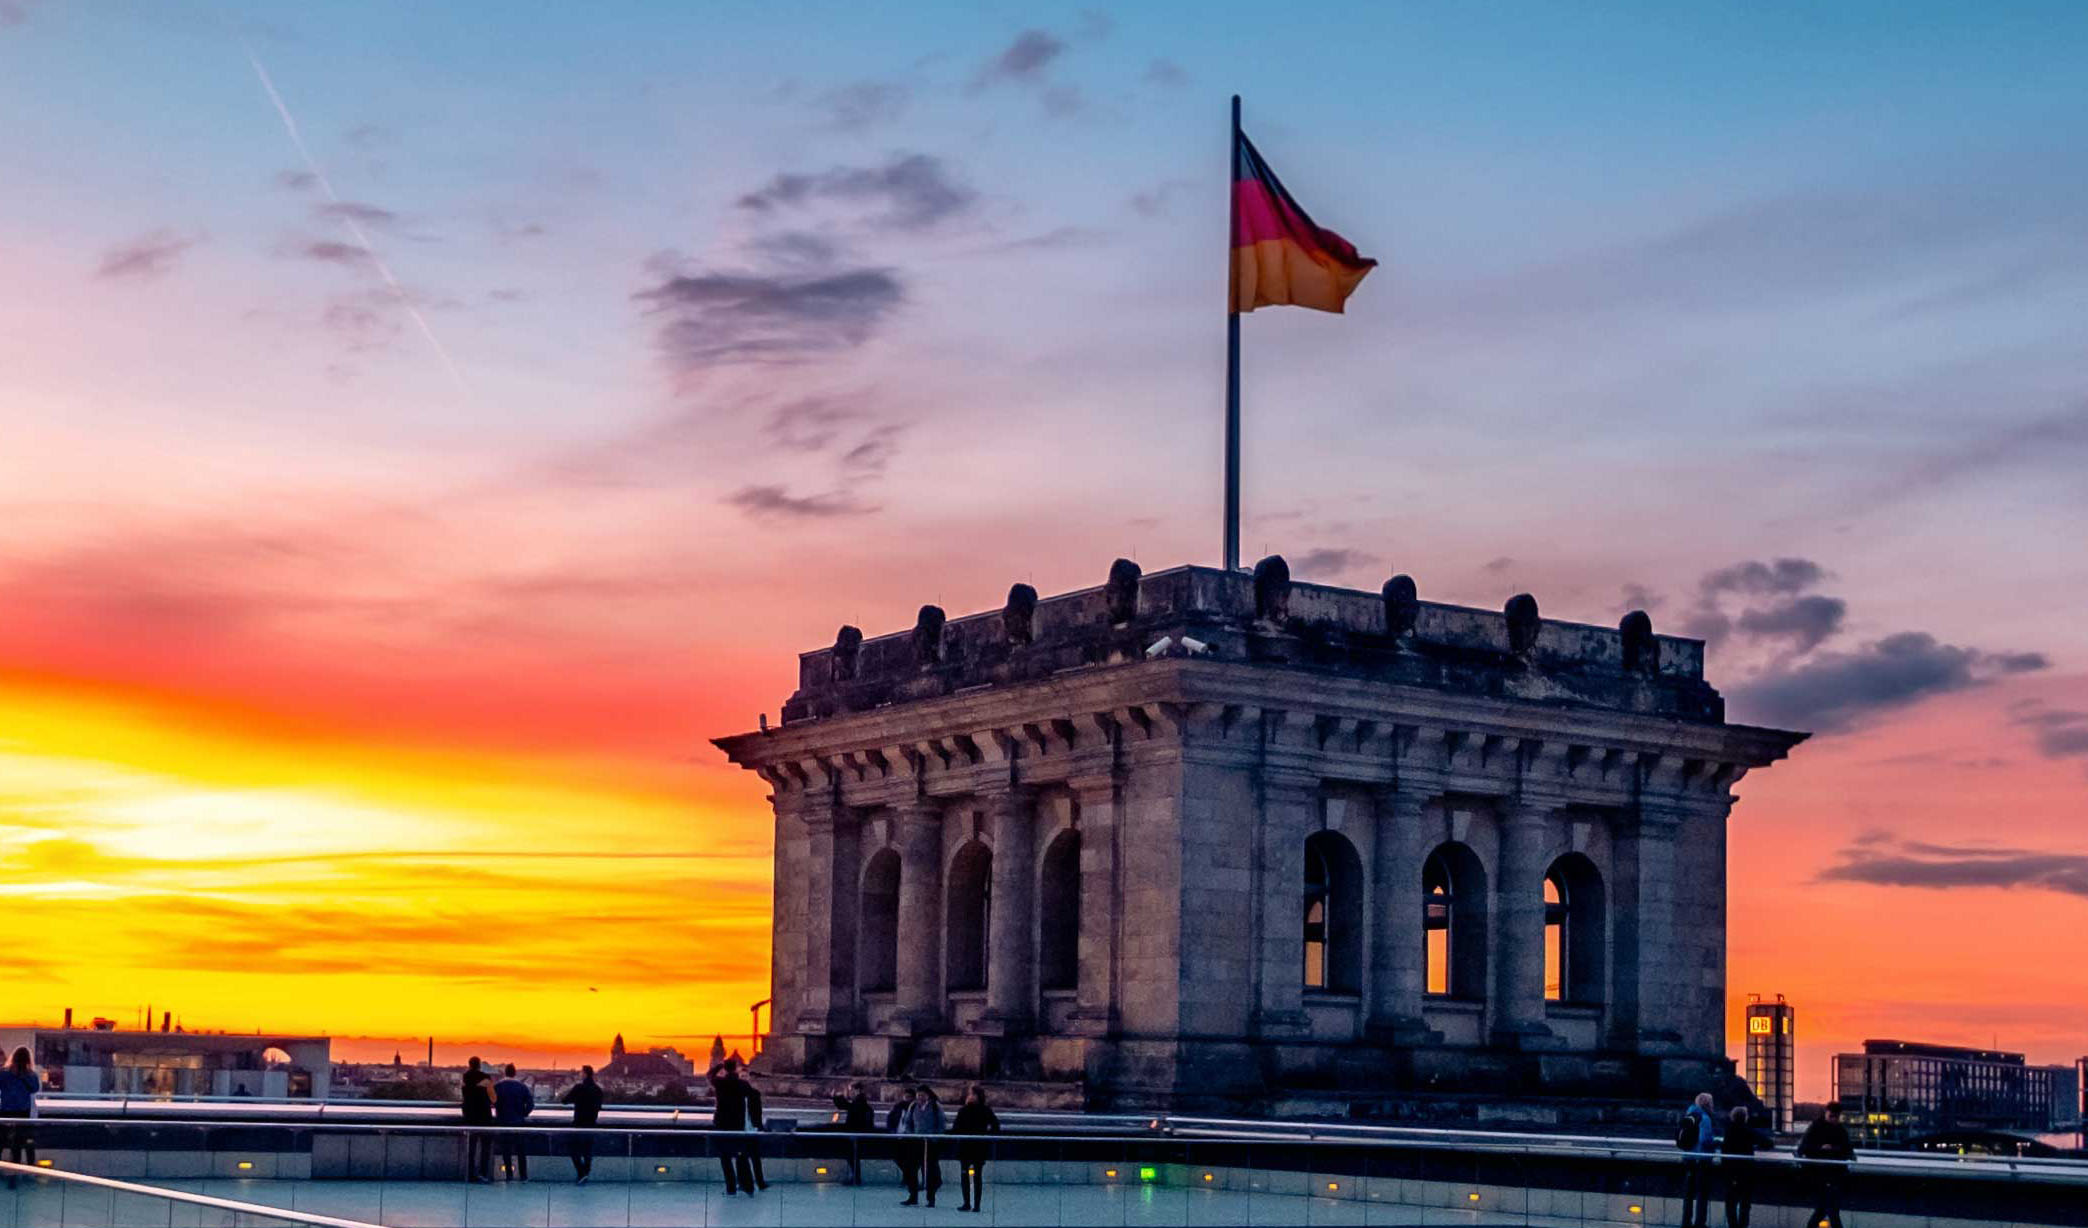 Turm des Reichstagsgebäudes bei Sonnenuntergang